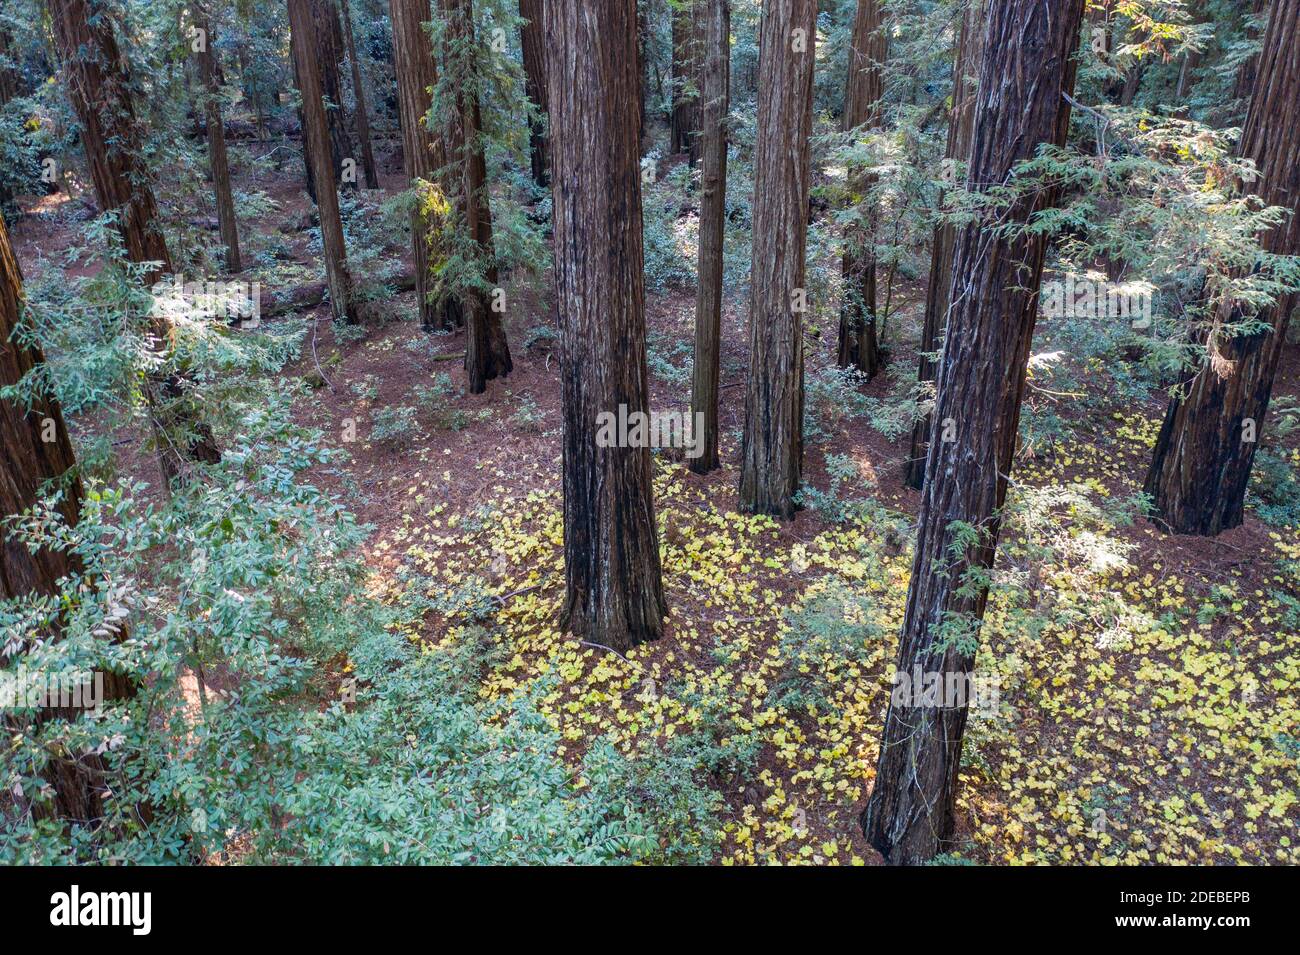 La luce del sole scende nelle ombre di una foresta di sequoie, Sequoia sempervirens, nella California del Nord. Le sequoie sono gli alberi più grandi della Terra. Foto Stock